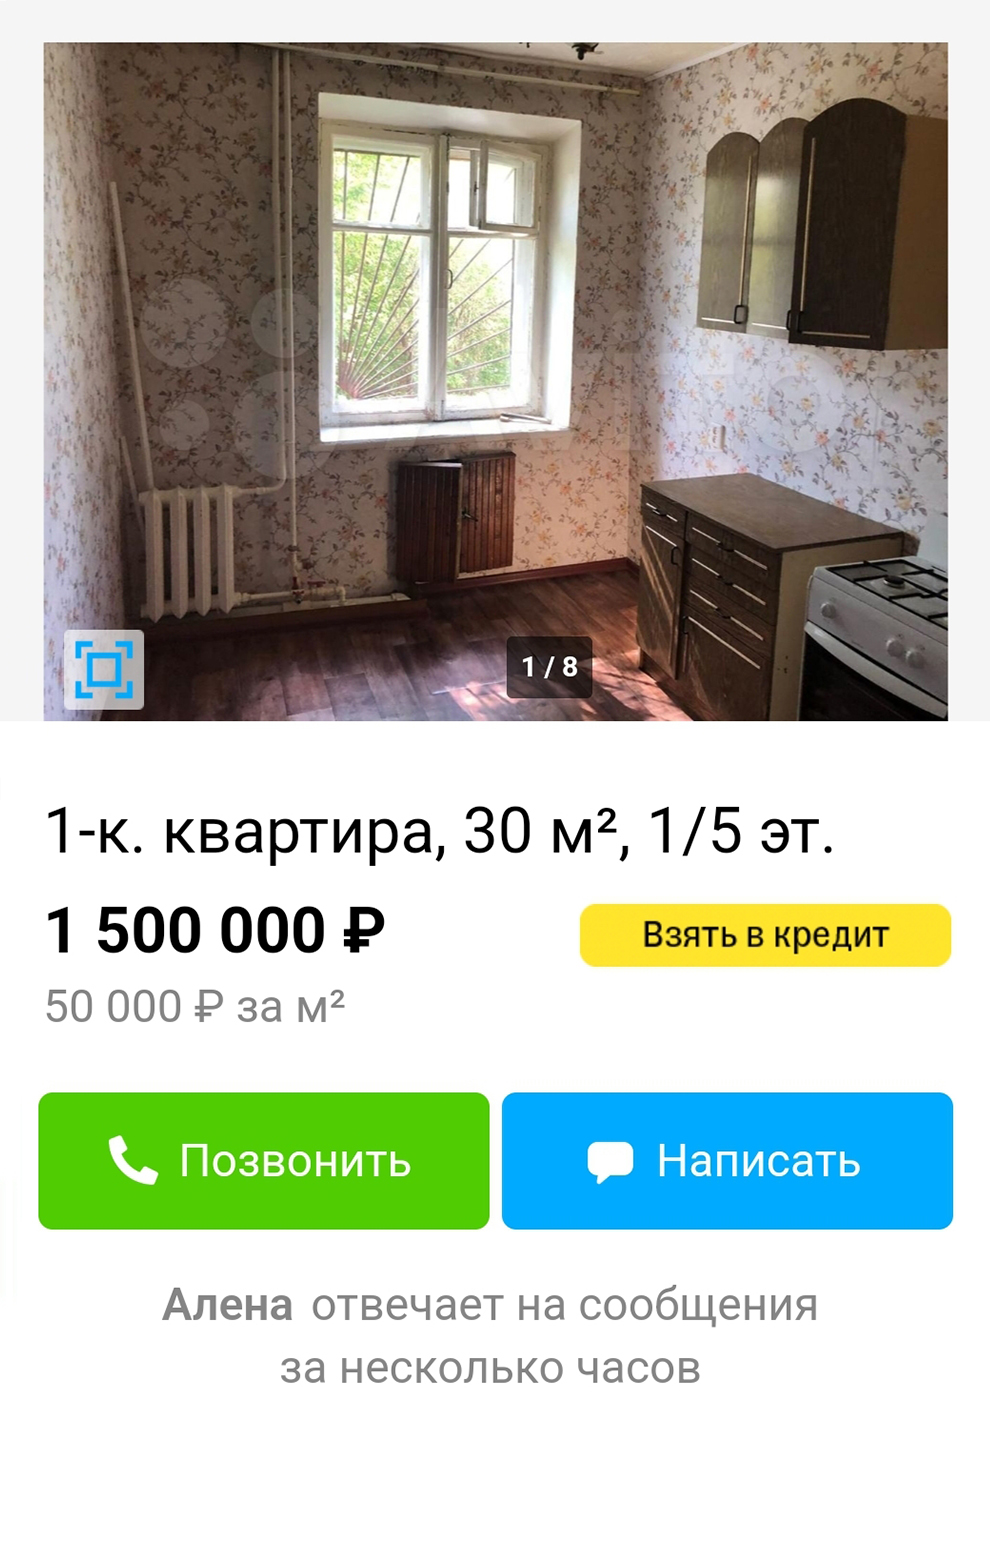 Однокомнатная квартира в центре города — 1,5 млн. Источник: avito.ru